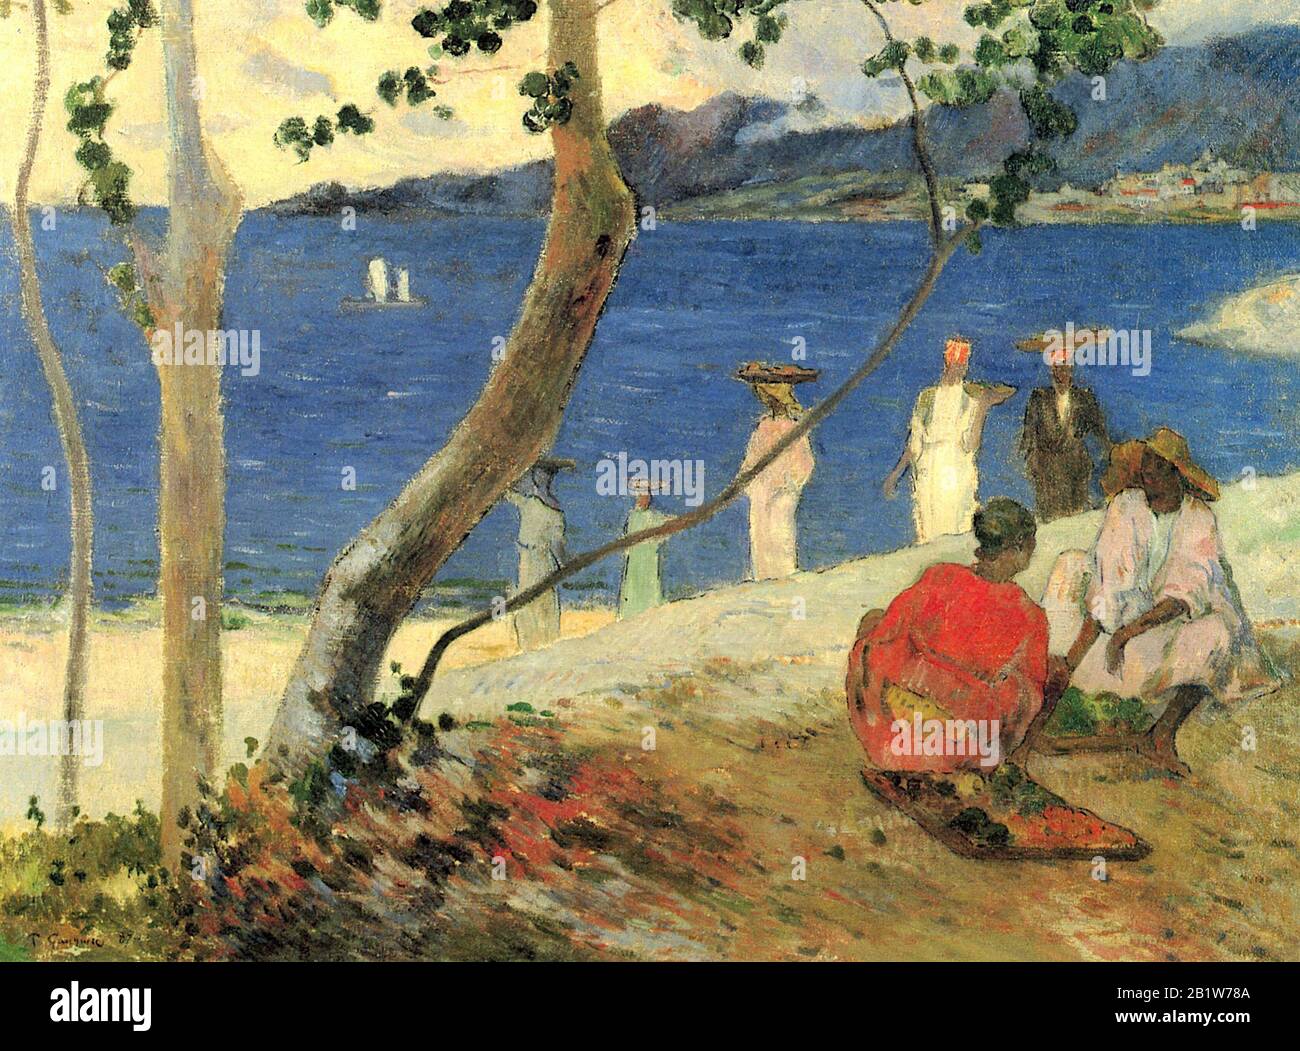 Portatori di frutta alla baia di Torino, o al mare (1887) Pittura ottocentesca di Paul Gauguin - altissima risoluzione e qualità dell'immagine Foto Stock